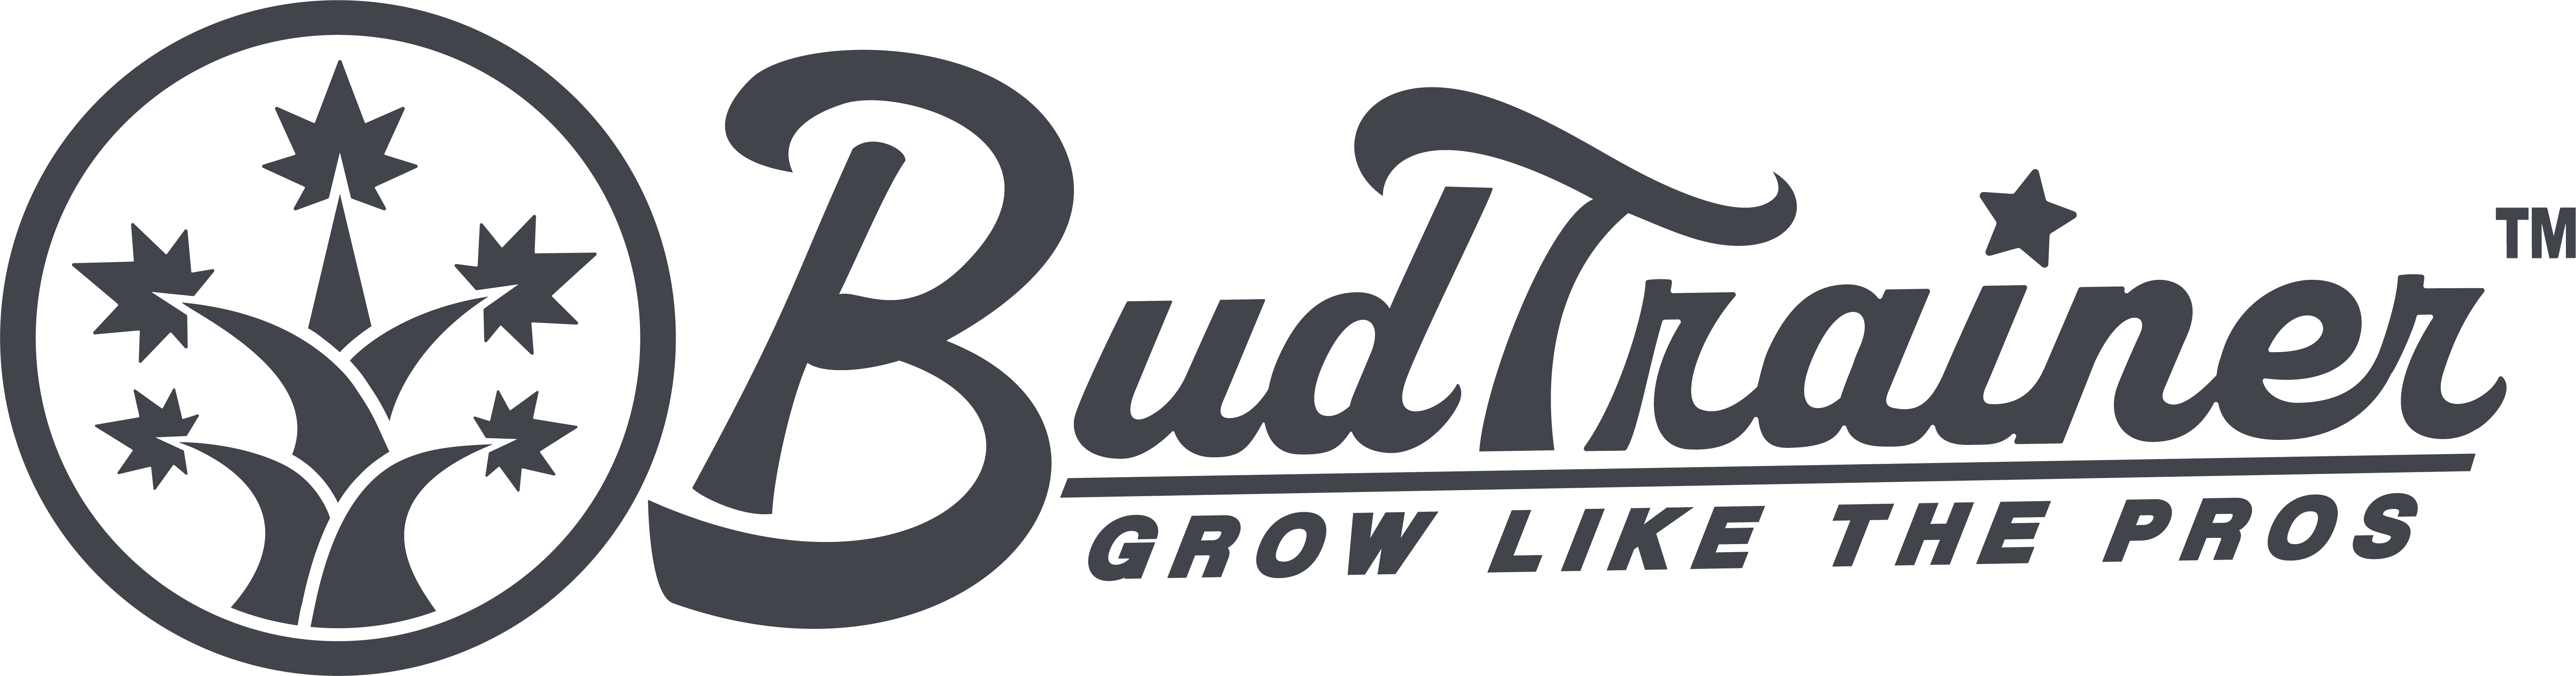 BudTrainer logo transparent background grey png